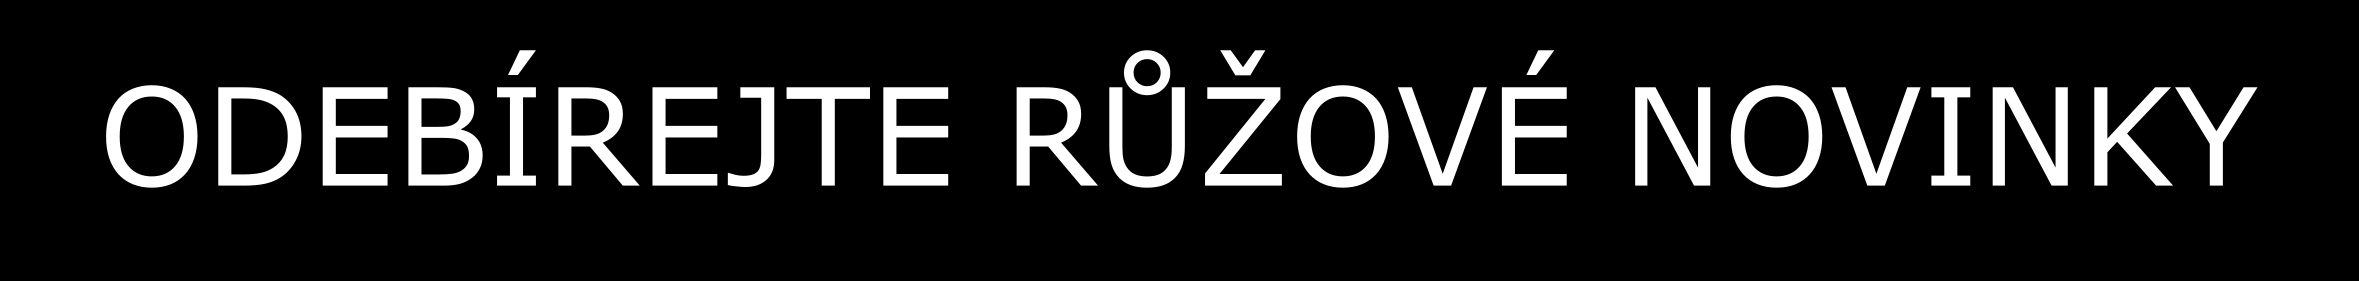 www.ruzenky.cz